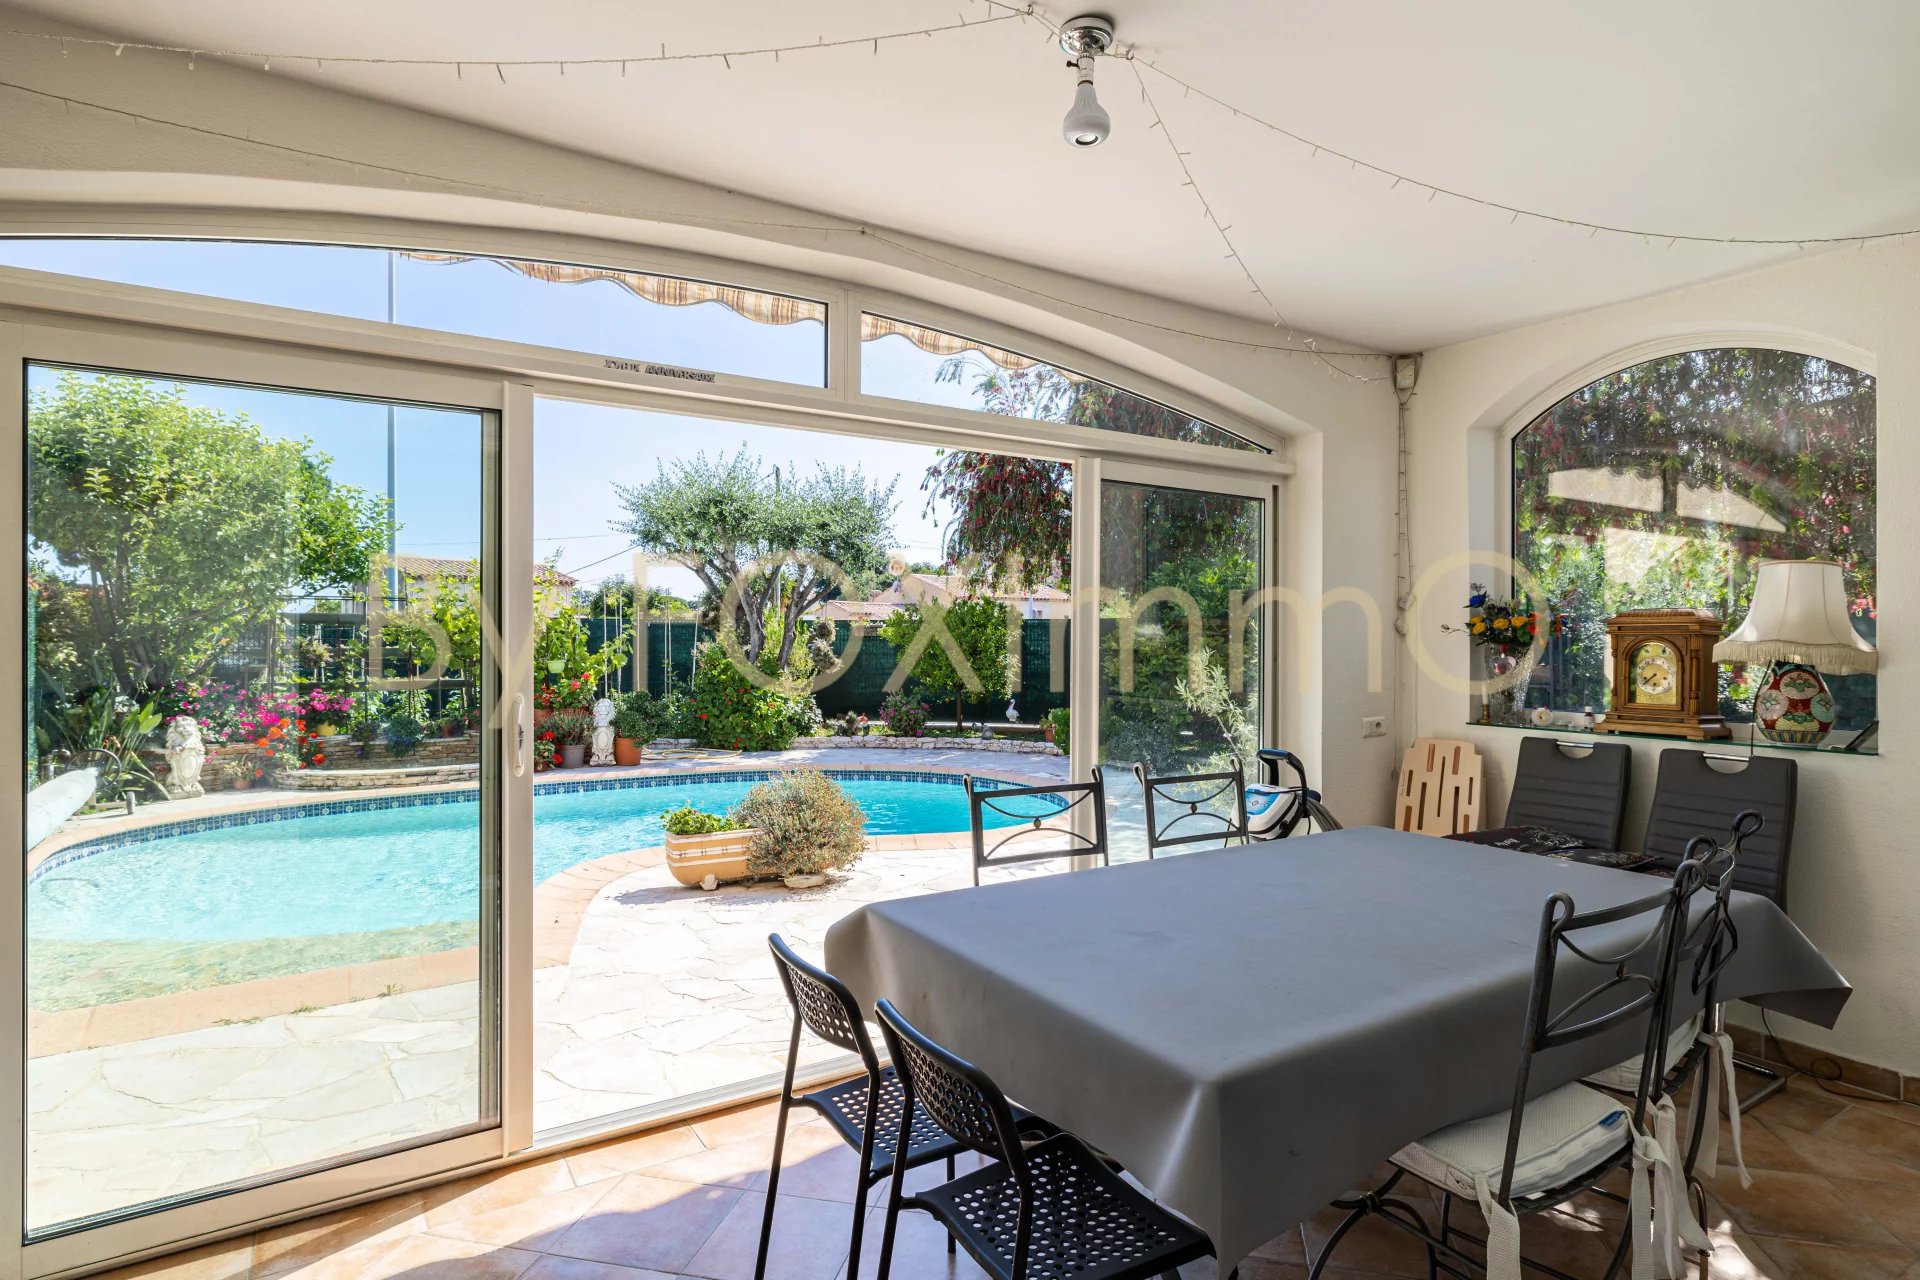 A vendre sur la Côte d'Azur, magnifique maison de 6 pièces avec piscine, garage, parking et abri camping car